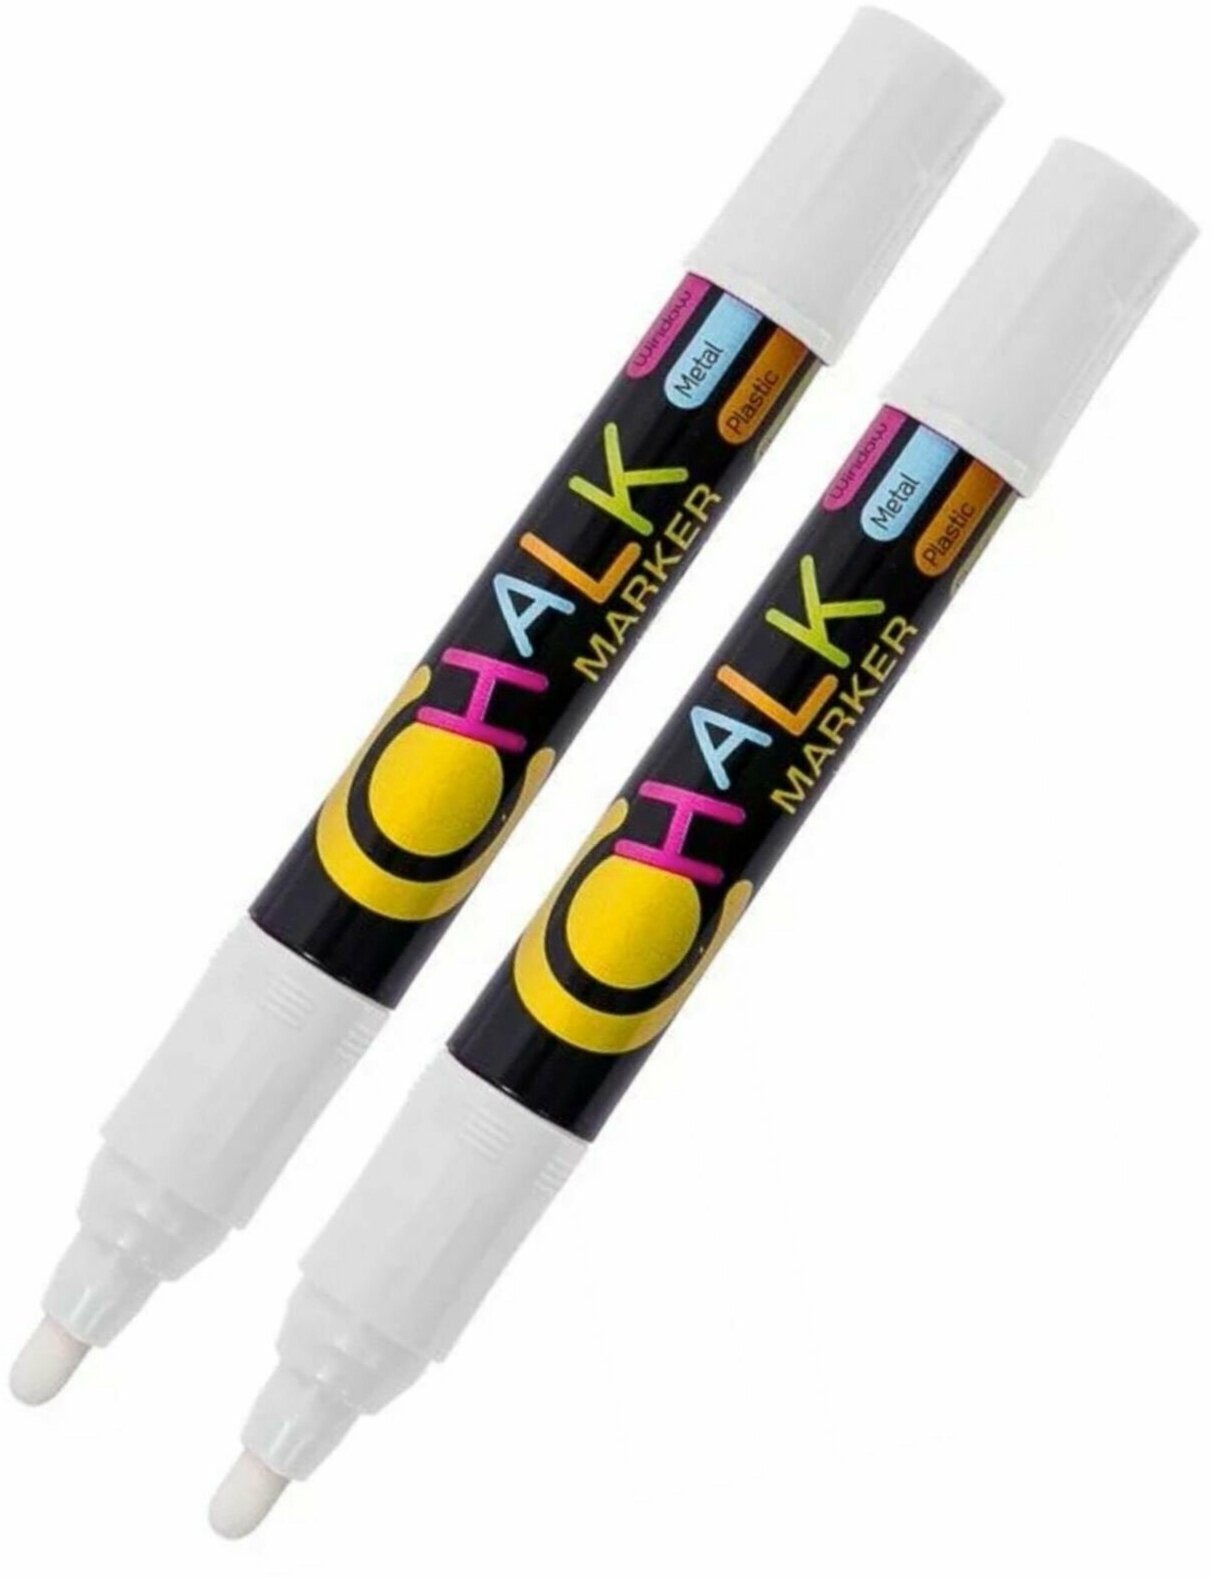 Меловой маркер белый для ценников/стекла/меловых досок/грифельных поверхностей FlexOffice Chalk жидкий МЕЛ white 2-4.5 мм - 2 шт